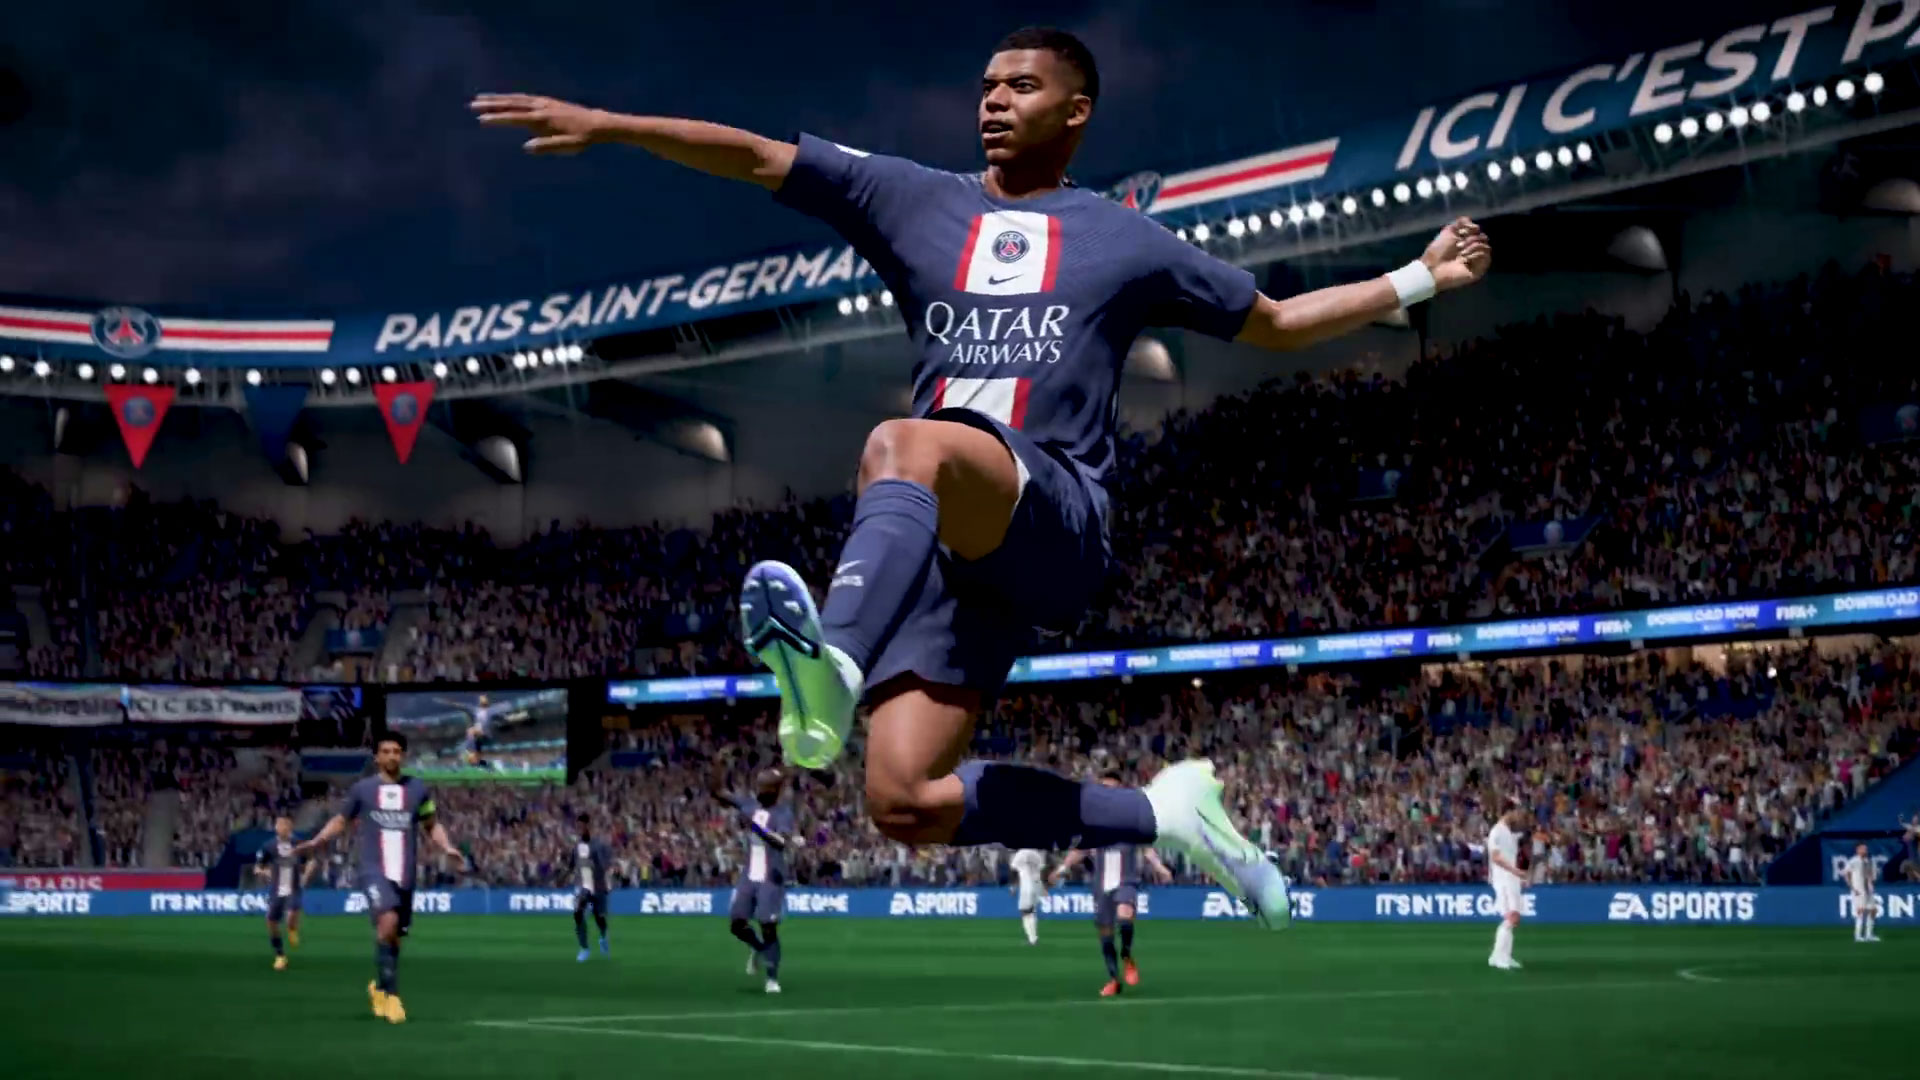 EA SPORTS FIFA 23